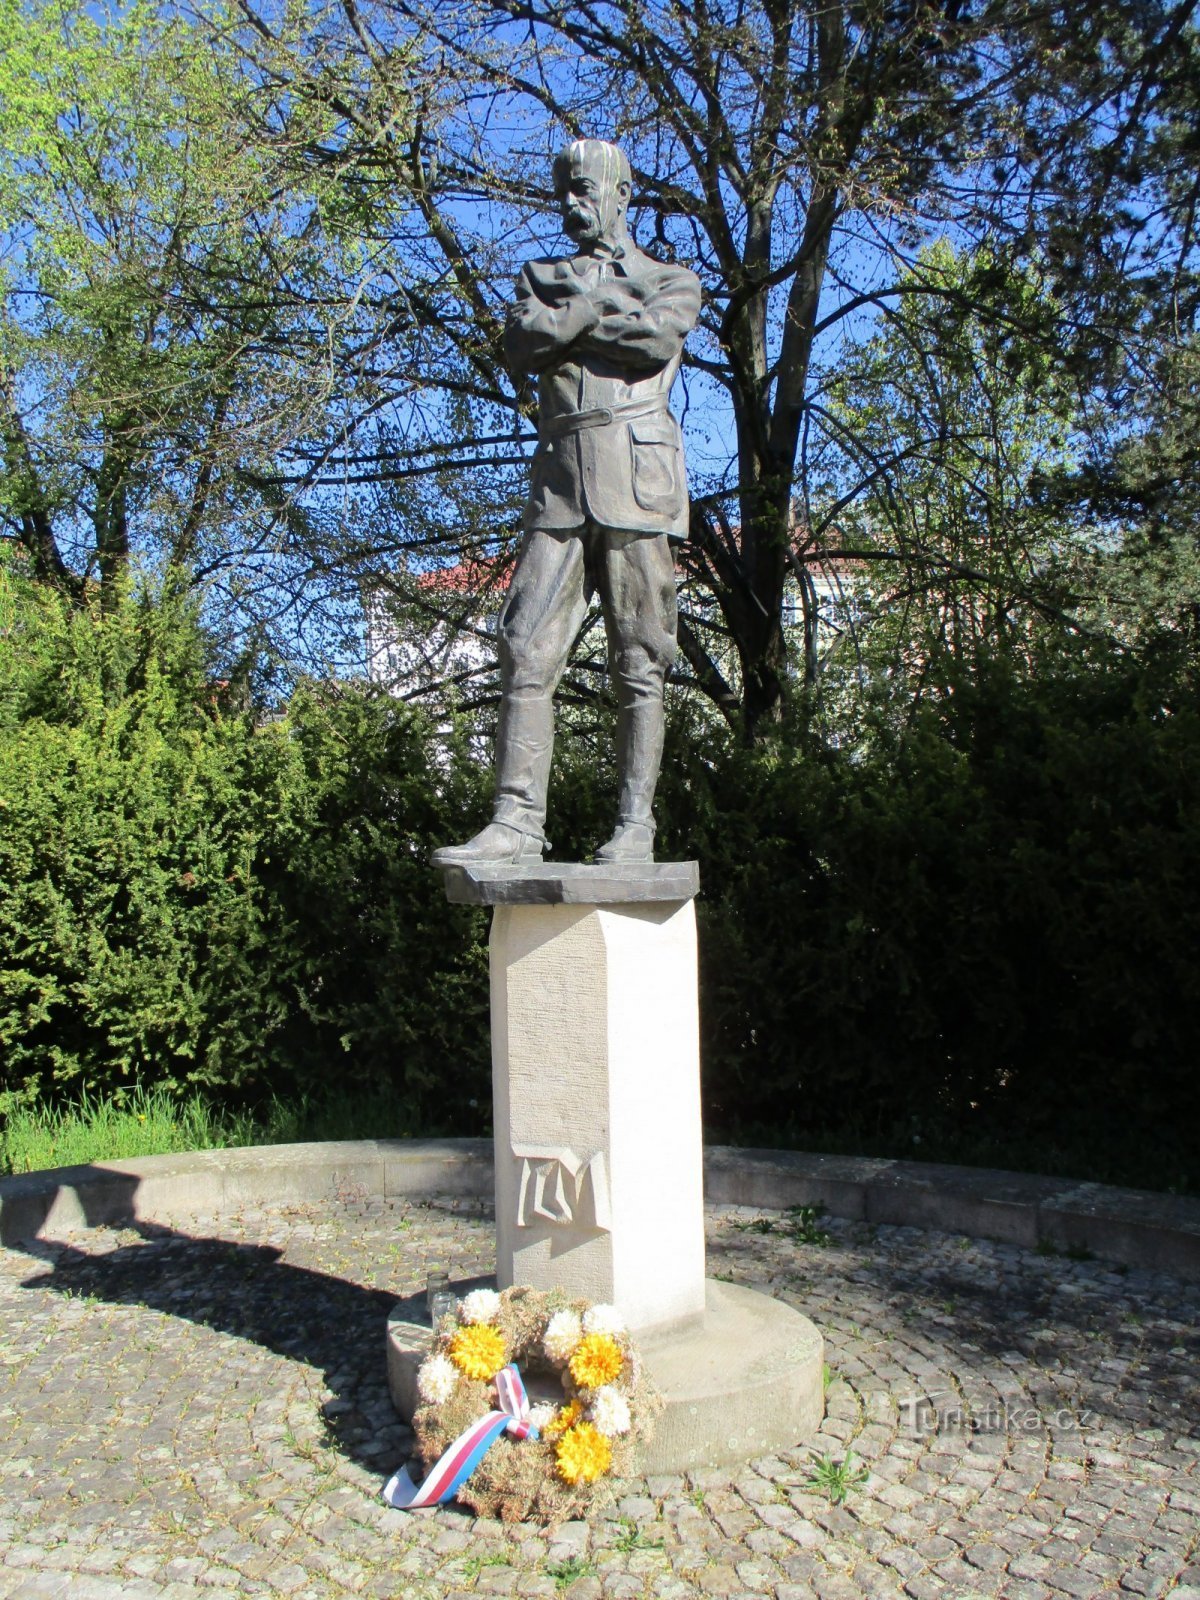 Monument à TG Masaryk (Jaroměř, 22.4.2020 avril XNUMX)